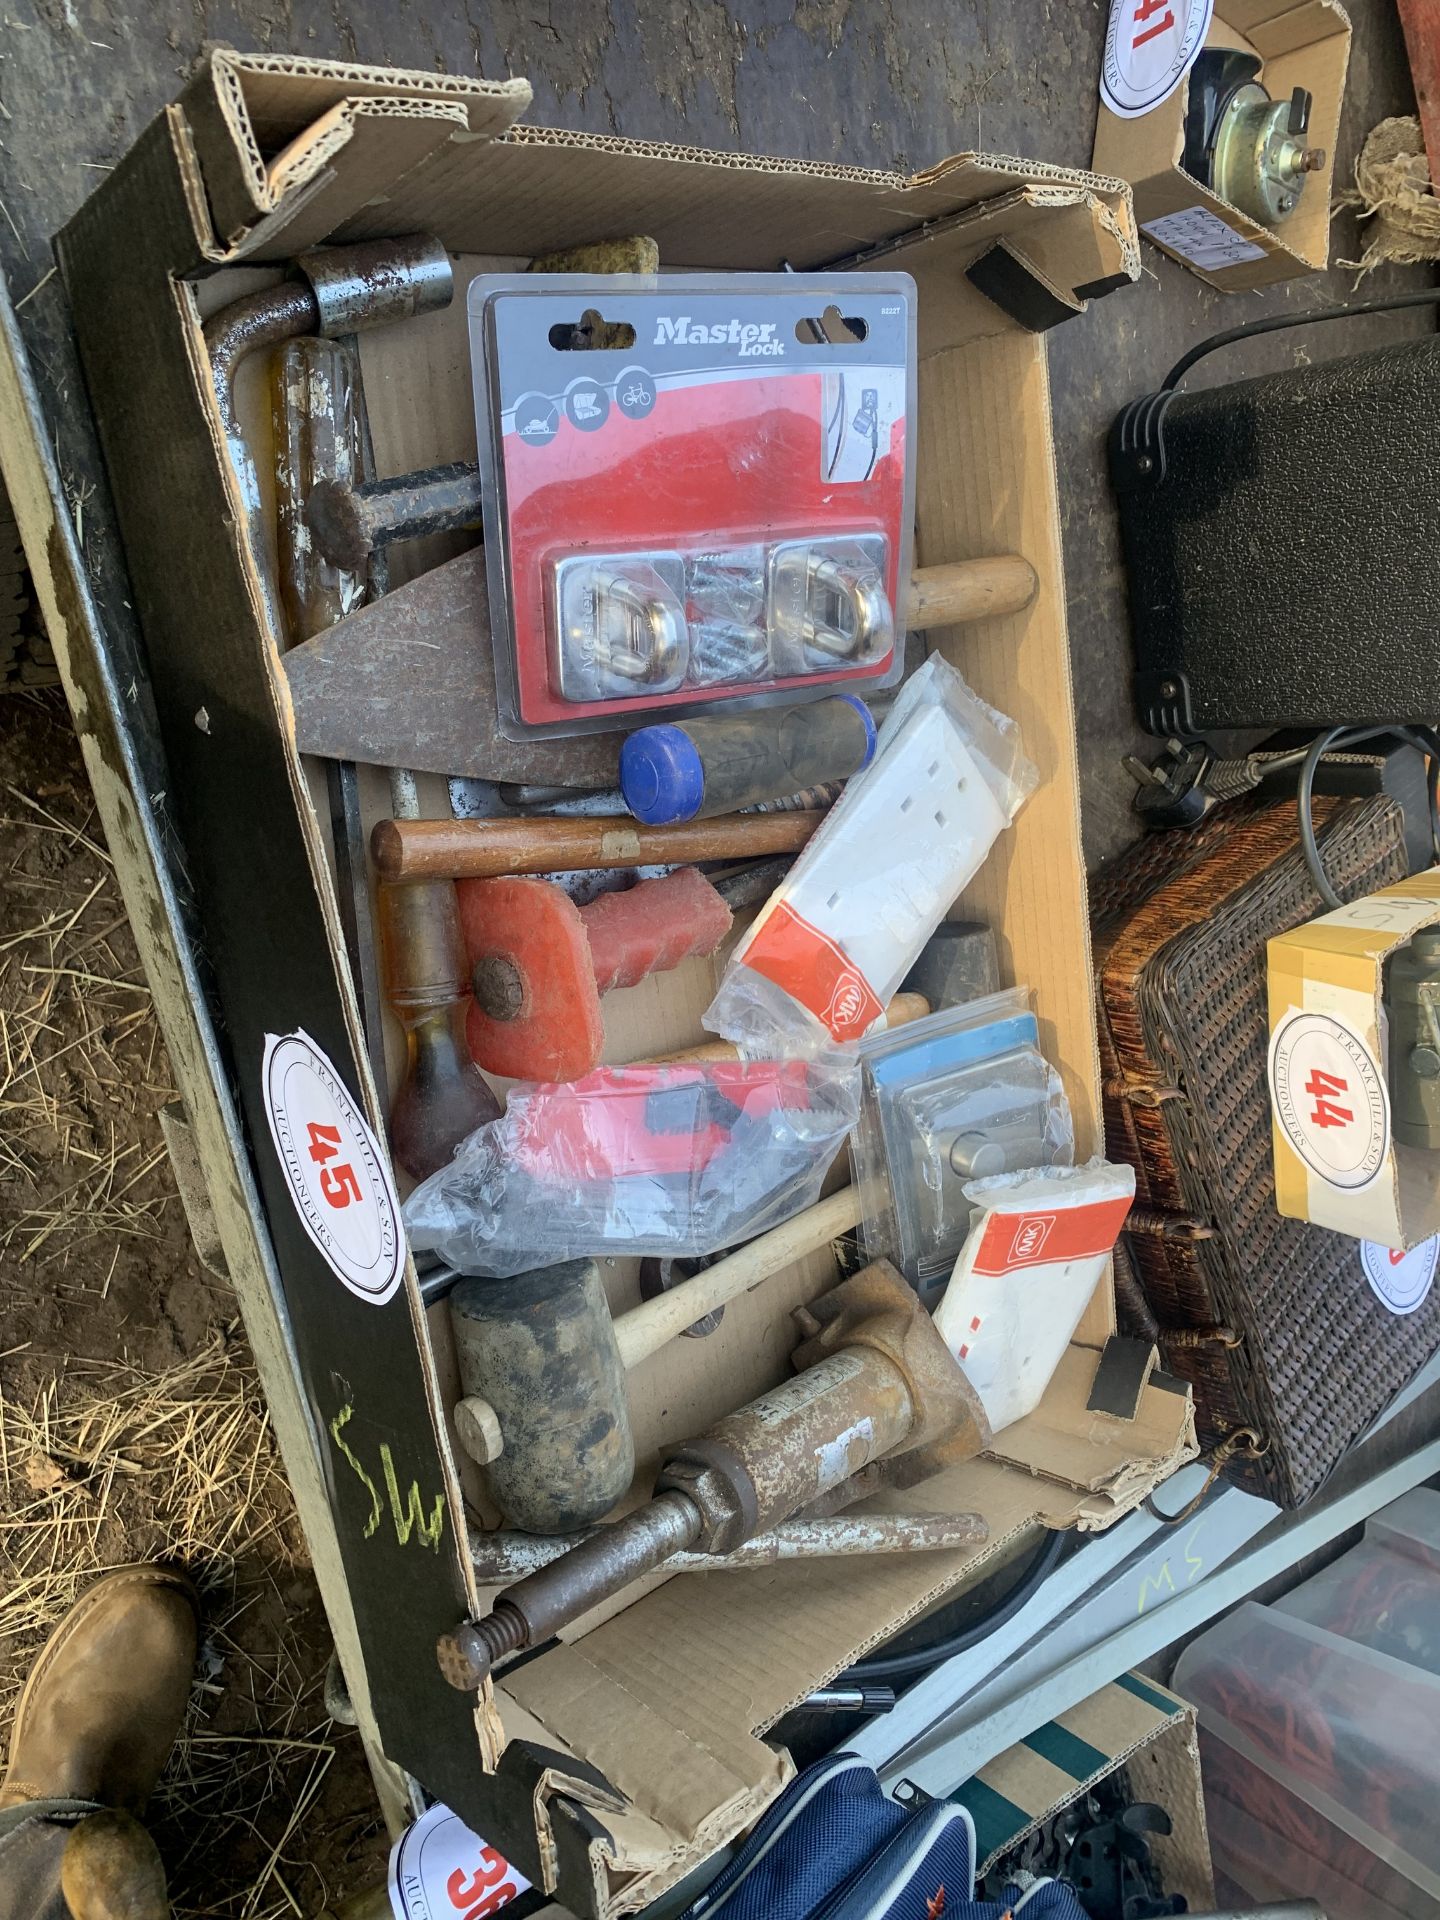 Box of tools etc